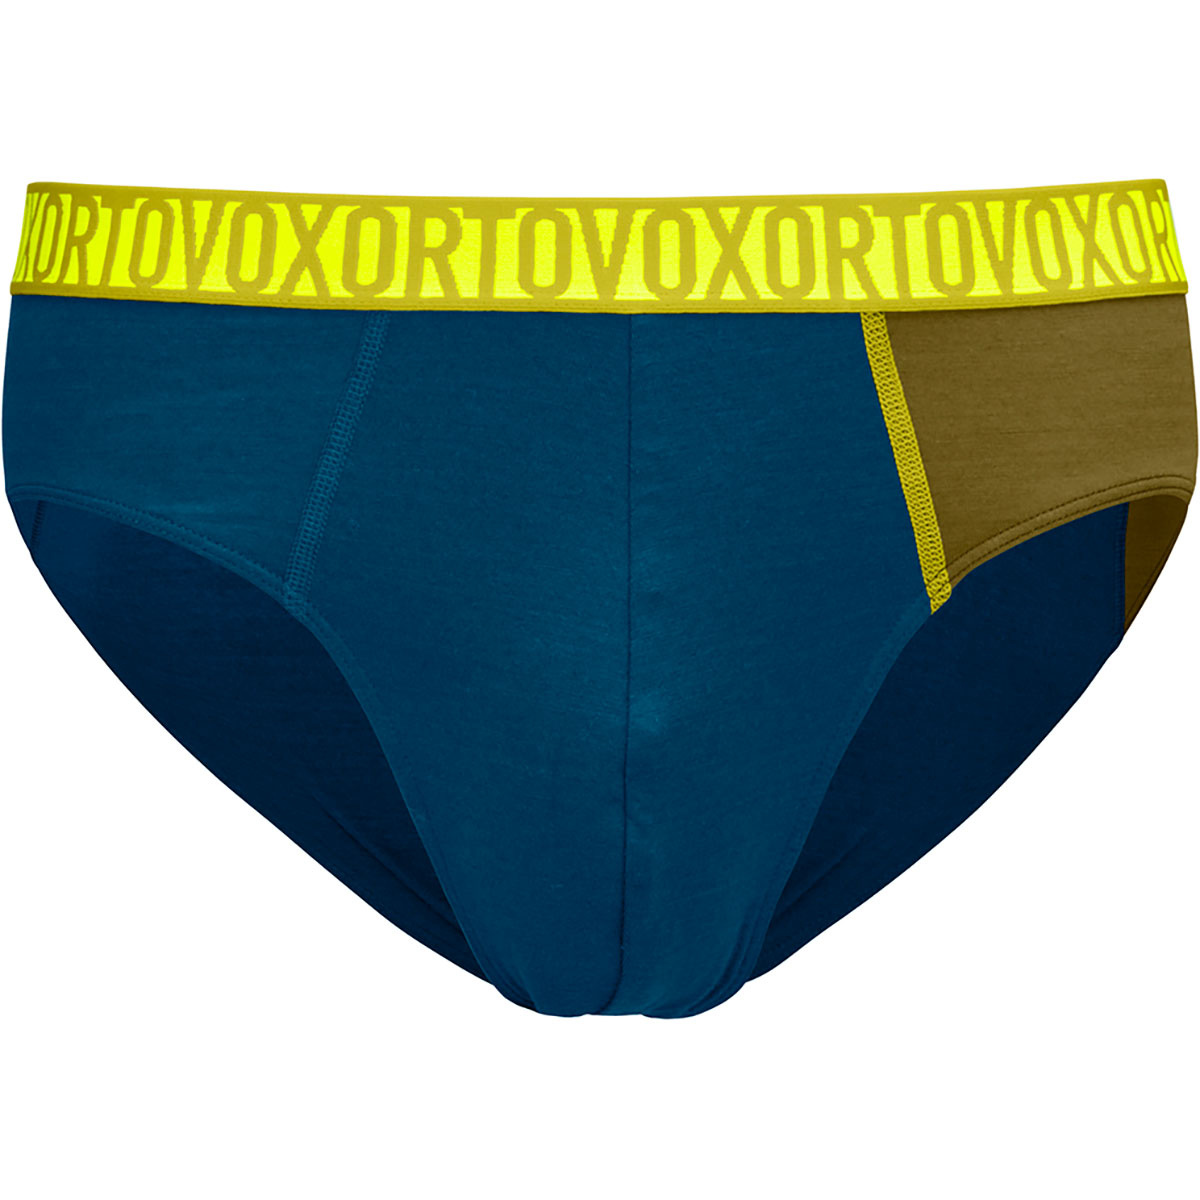 Image of Ortovox Uomo Boxer 150 Essential Briefs